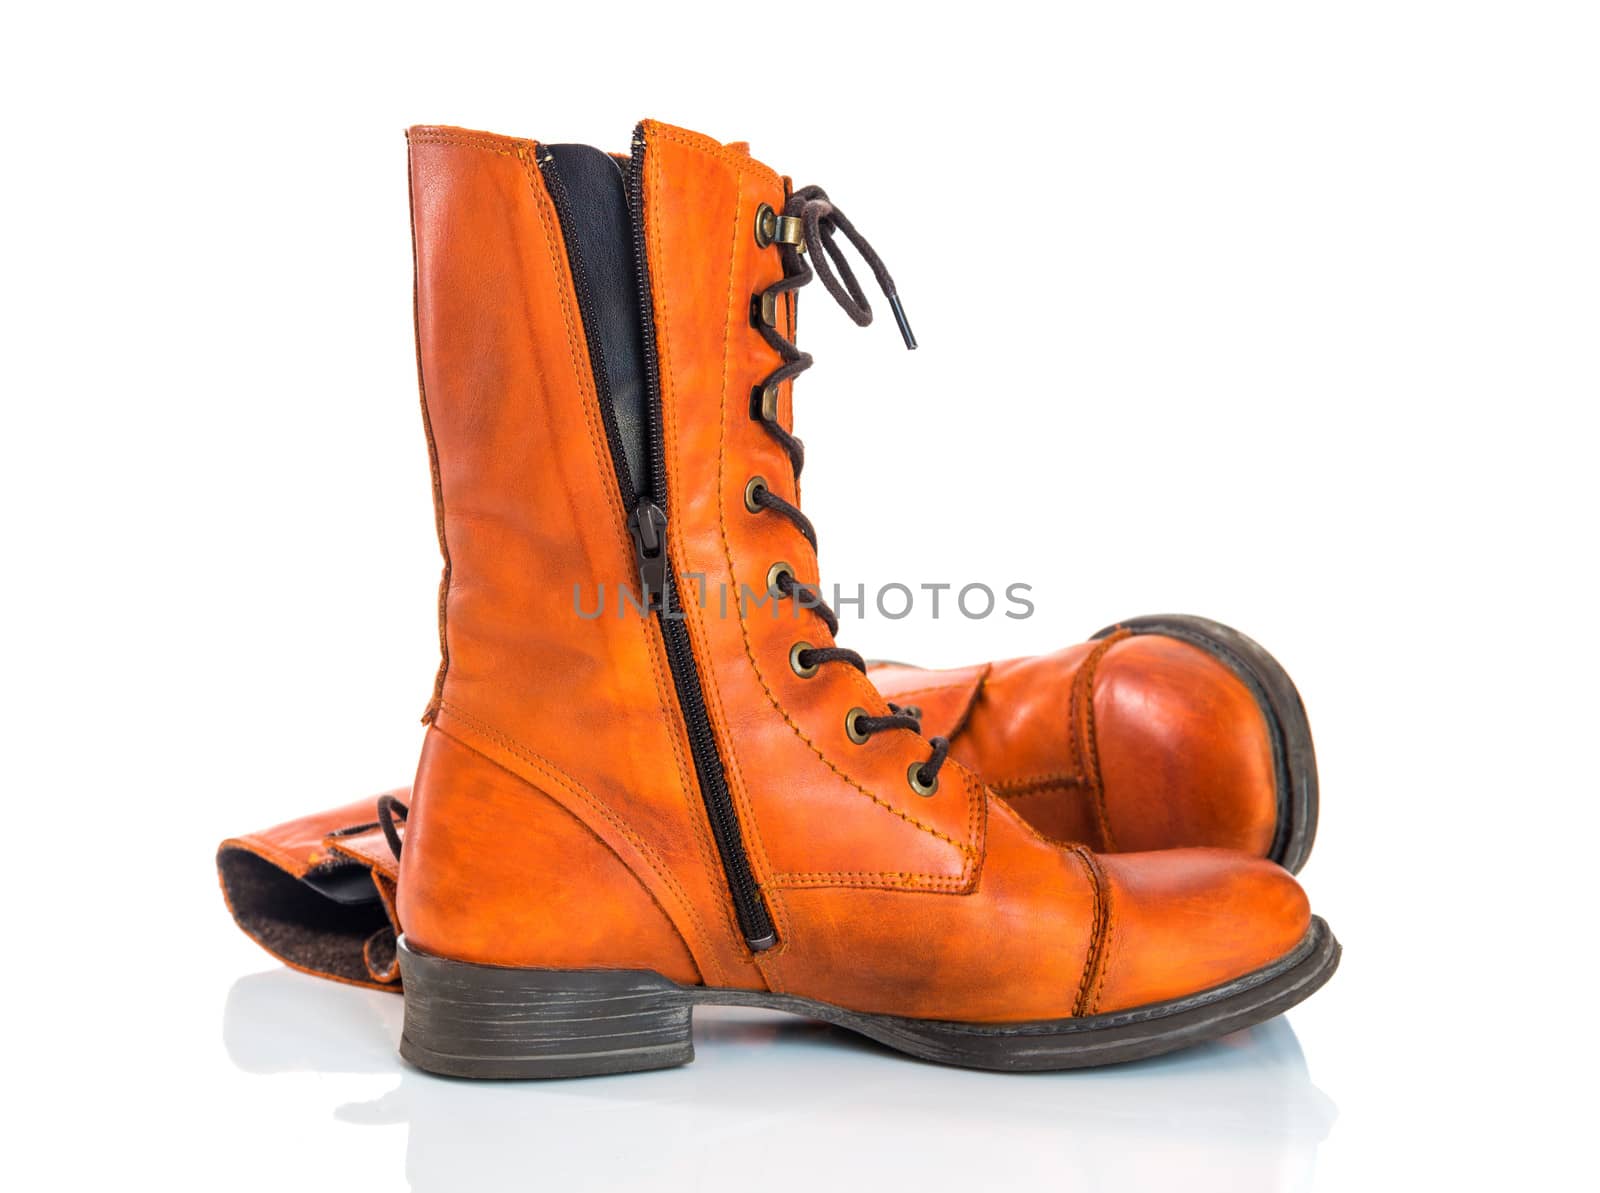 Stylish orange leather boots, isolated on white background.